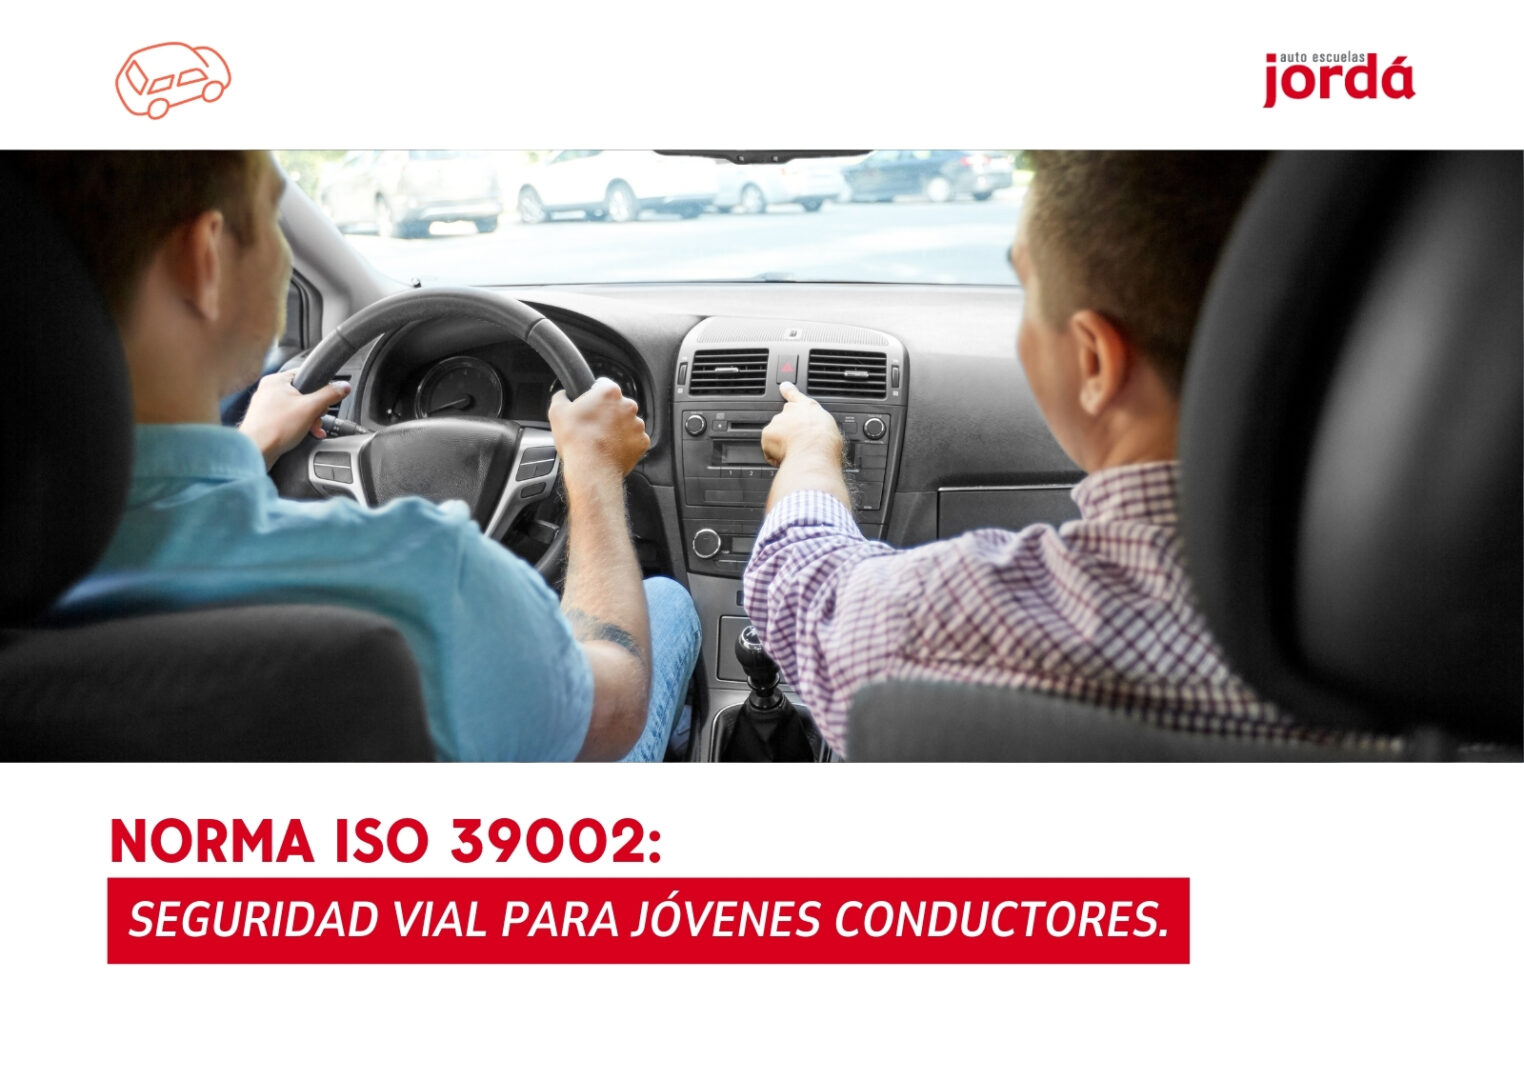 Norma ISO 39002 Seguridad Vial para Jóvenes Conductores